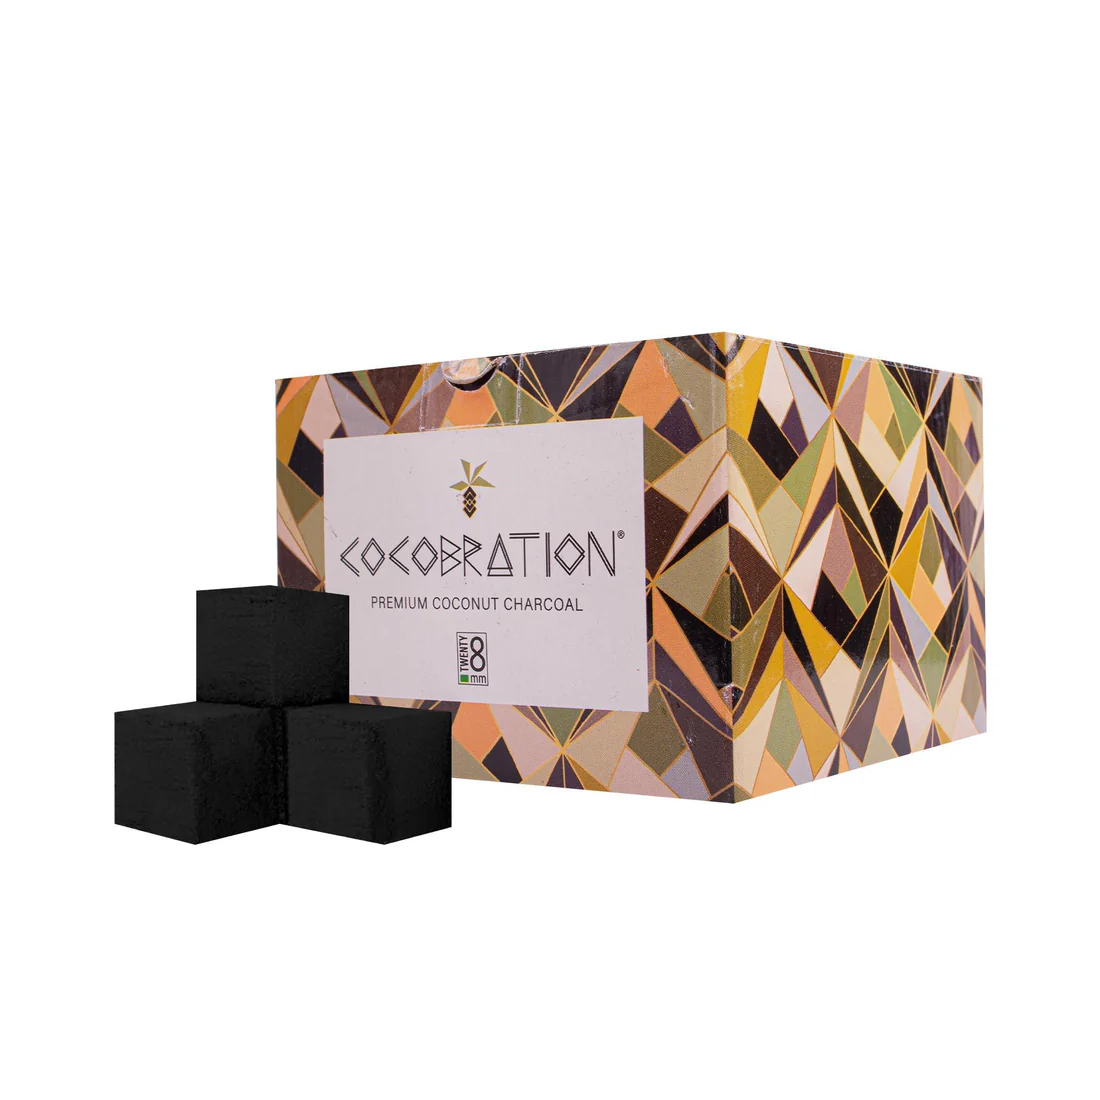 Cocobration 28er - 1 Kilogramm